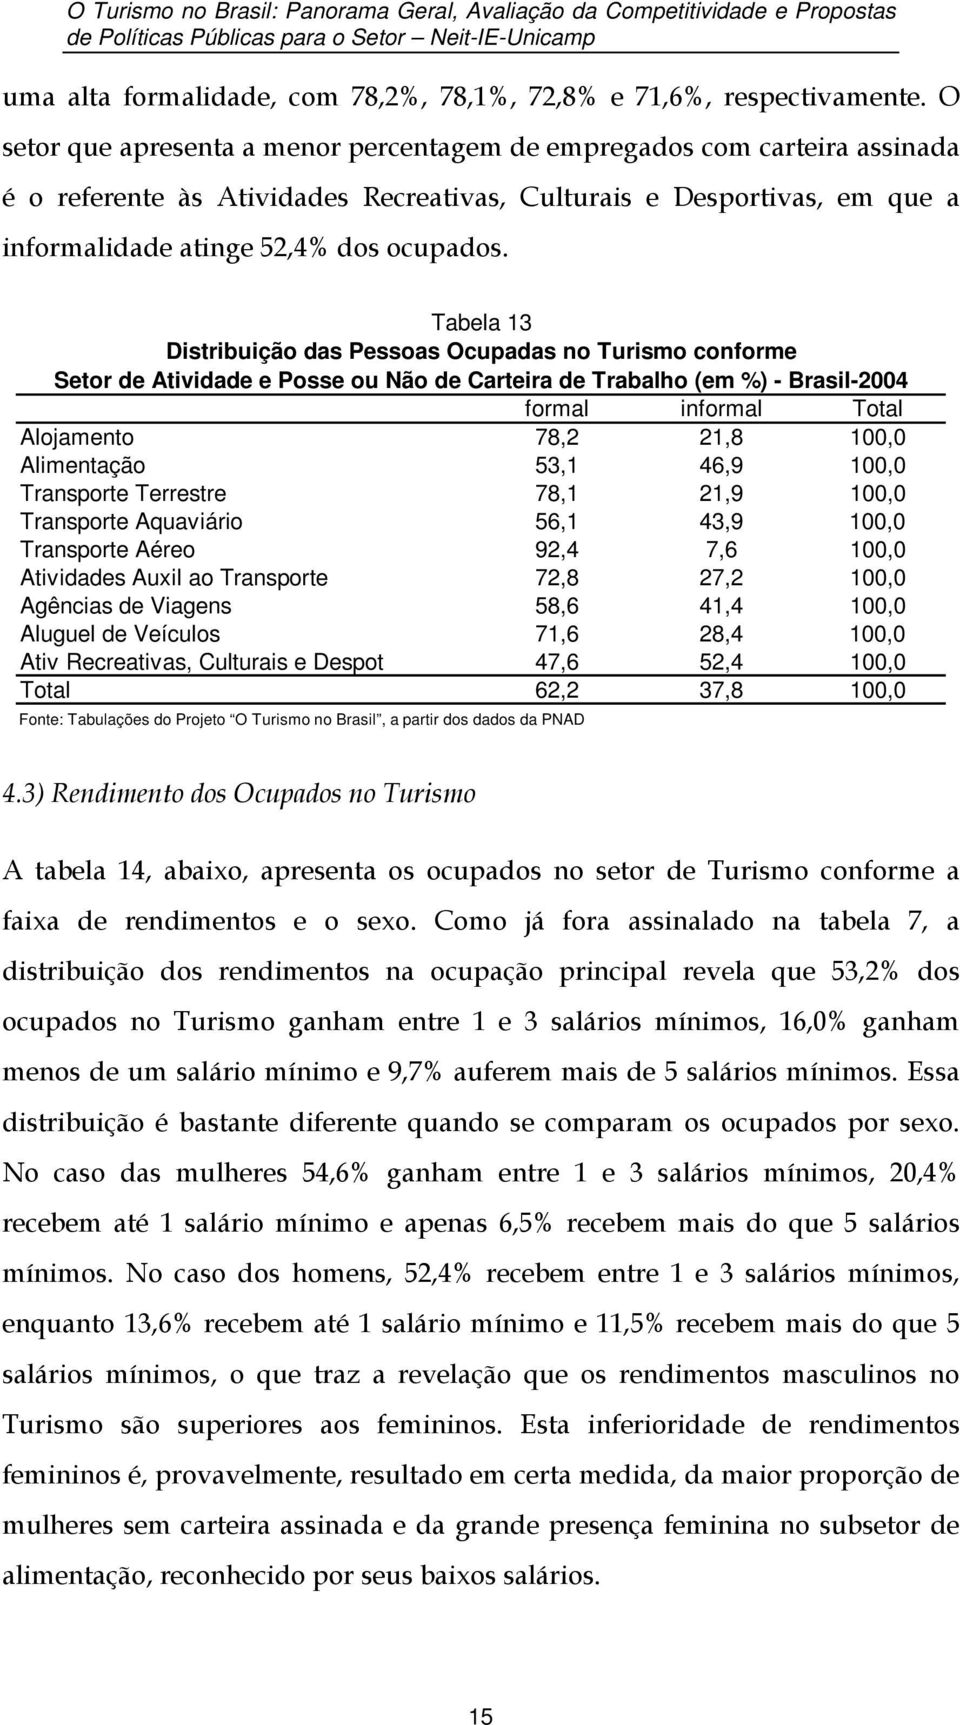 Tabela 13 Distribuição das Pessoas Ocupadas no Turismo conforme Setor de Atividade e Posse ou Não de Carteira de Trabalho (em %) - Brasil-2004 formal informal Total Alojamento 78,2 21,8 100,0